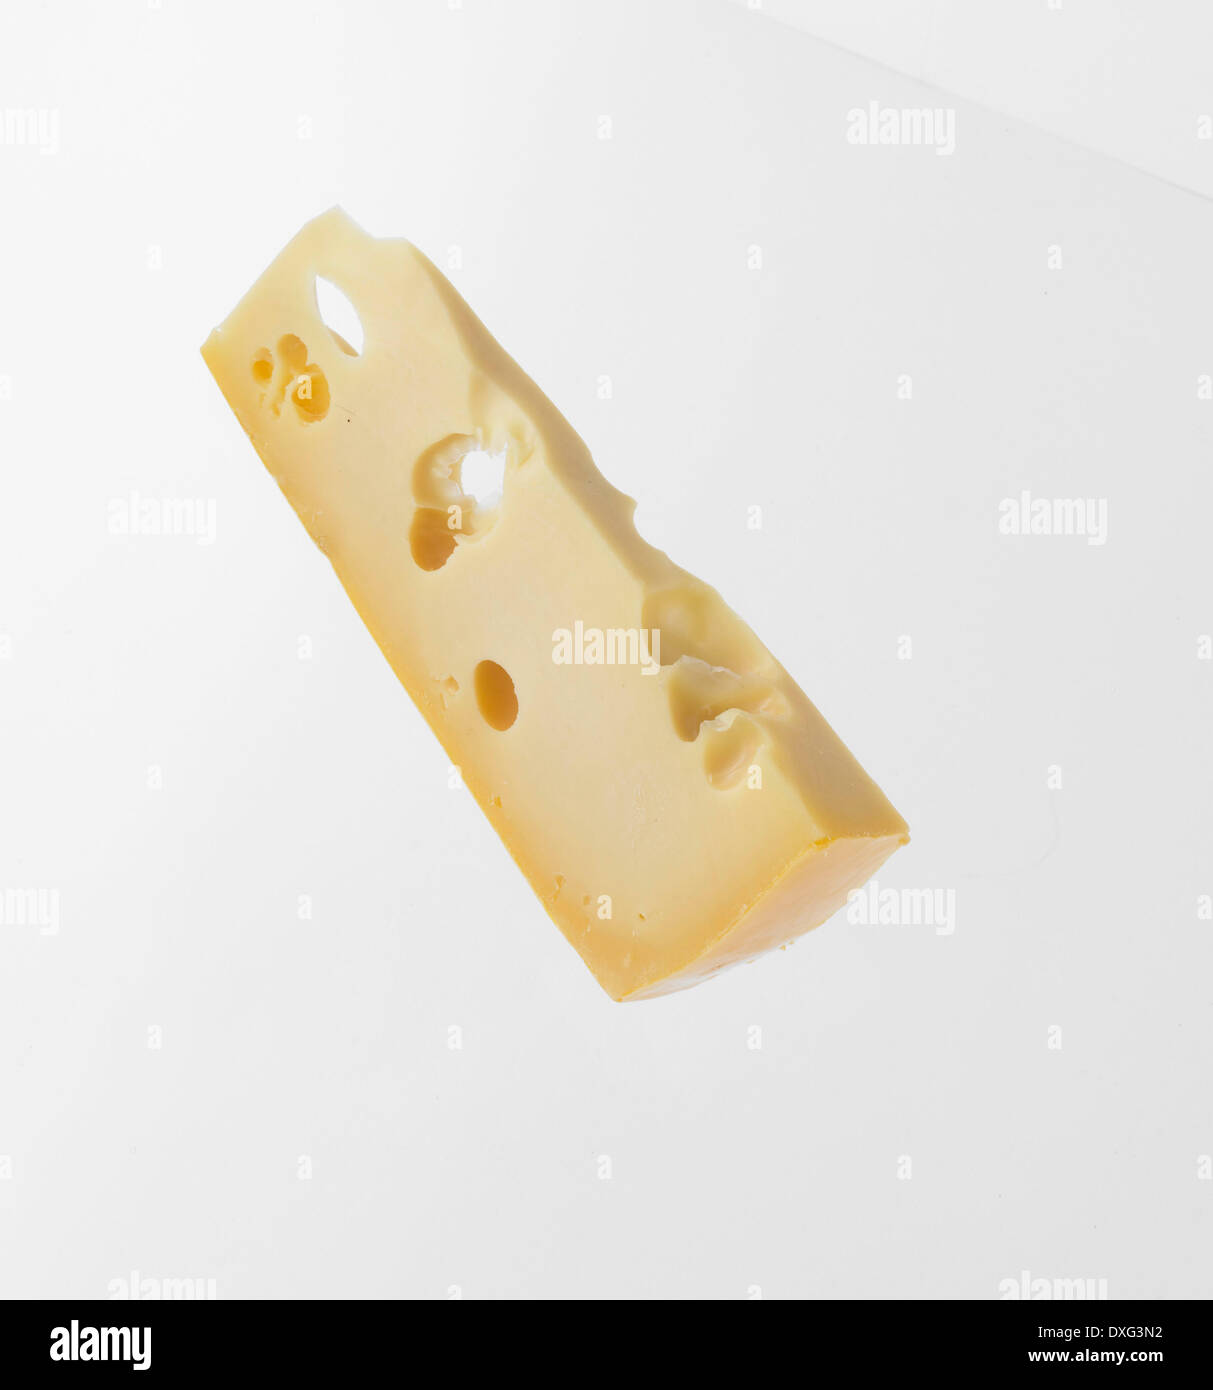 Tranche de fromage gruyère sur fond blanc Banque D'Images